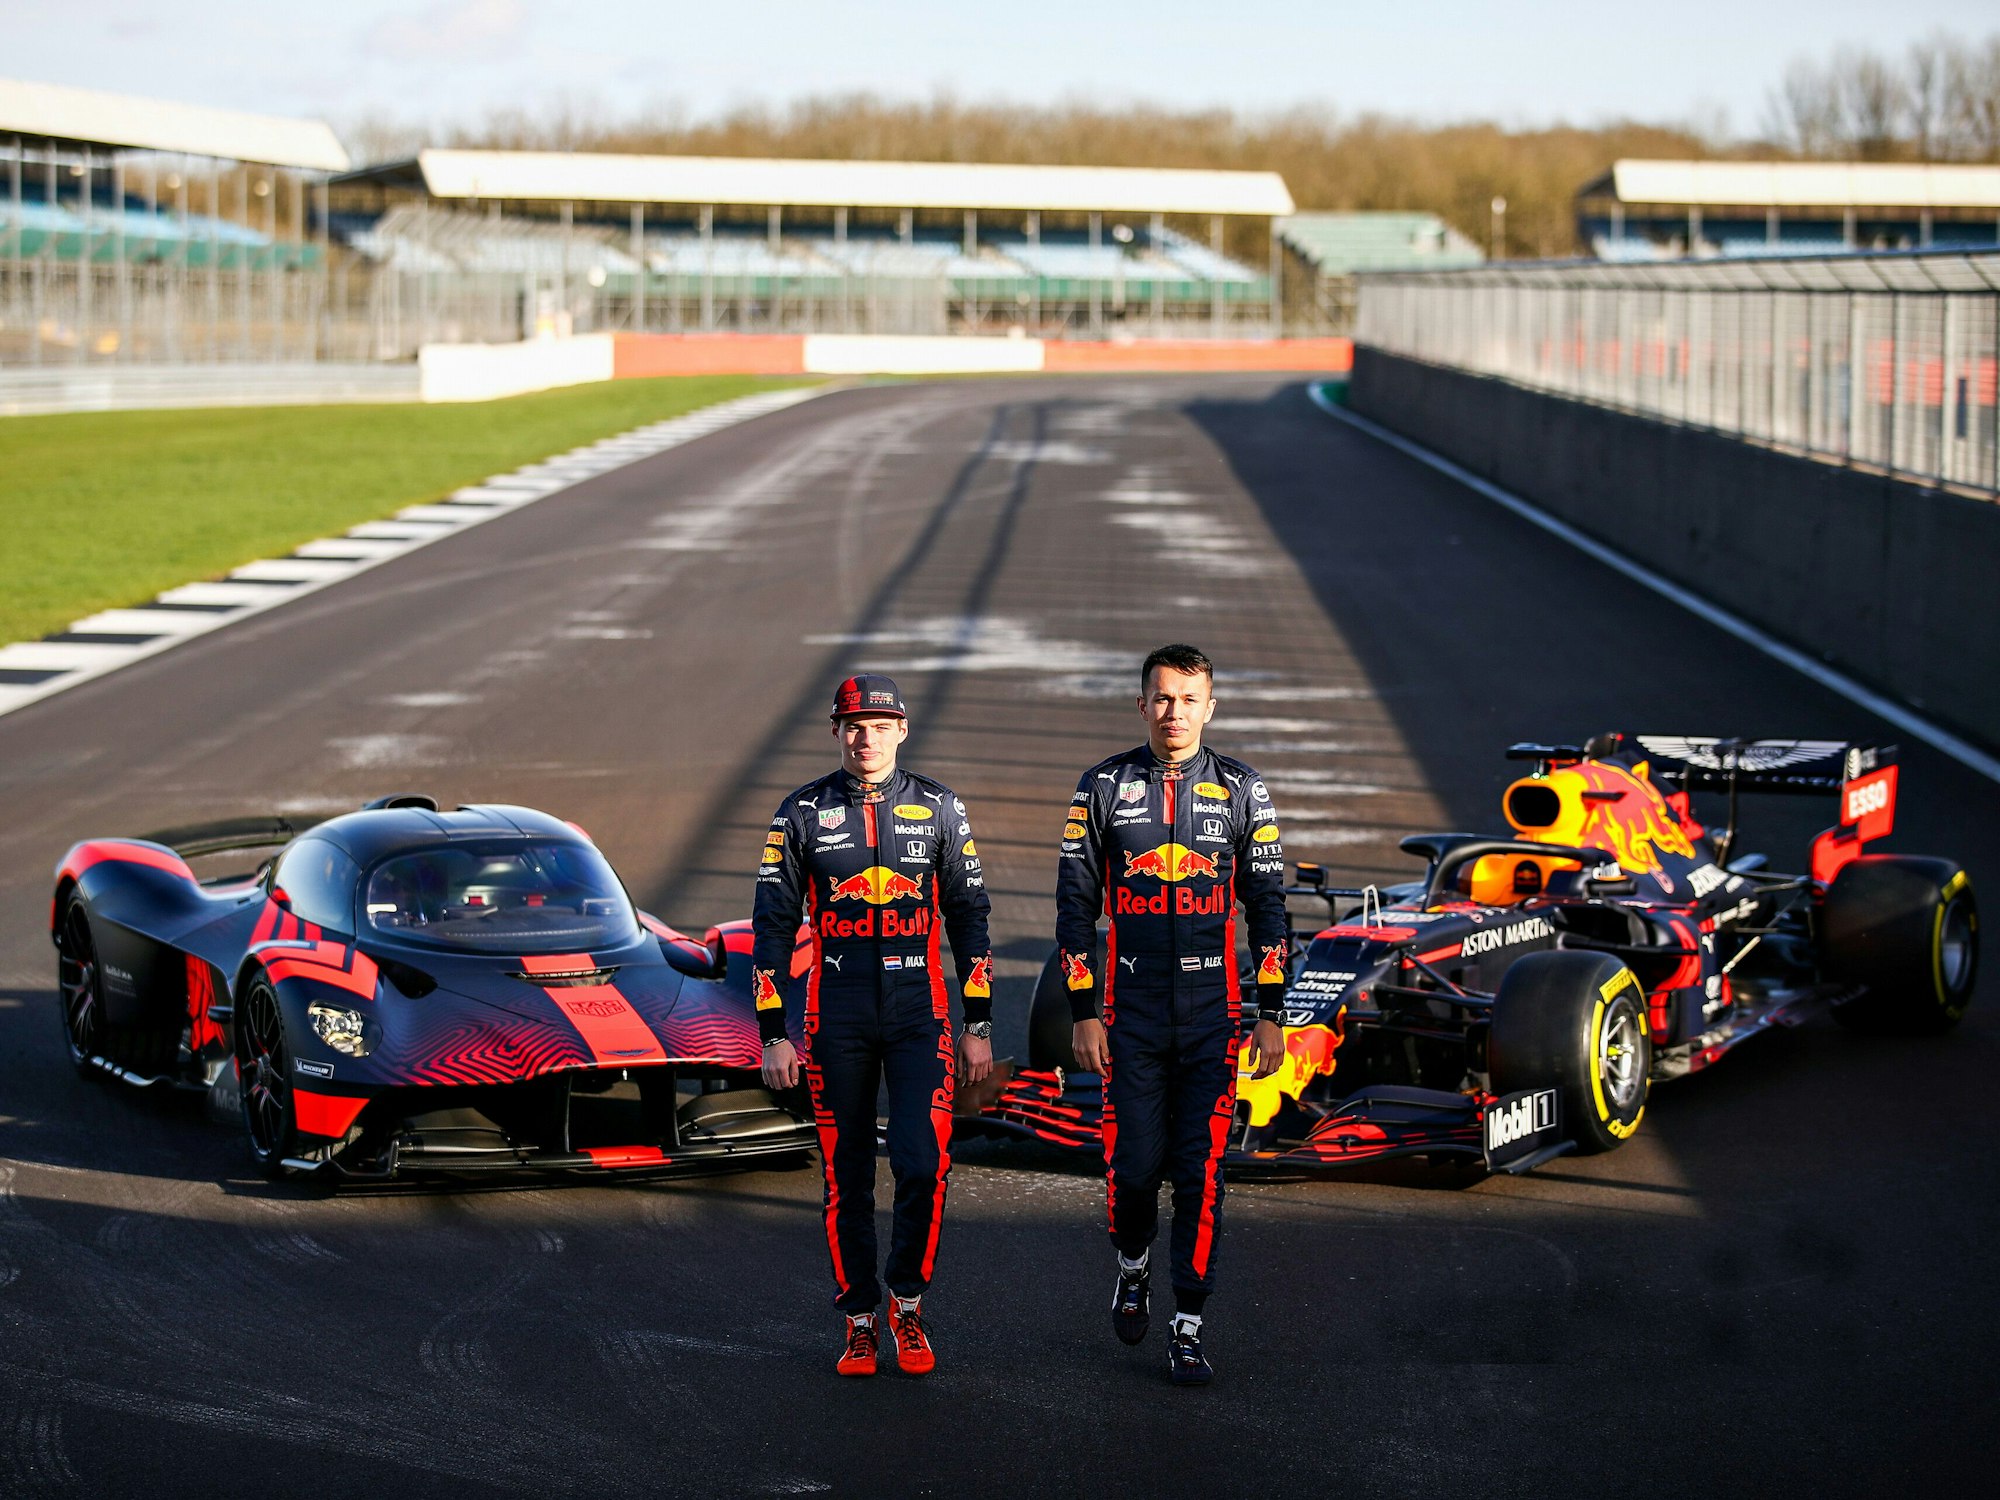 Max Verstappen und Alexander Albon vor dem Formel1-Wagen und dem Aston Martin Valkyrie in Silverstone am 12. Februar 2020.